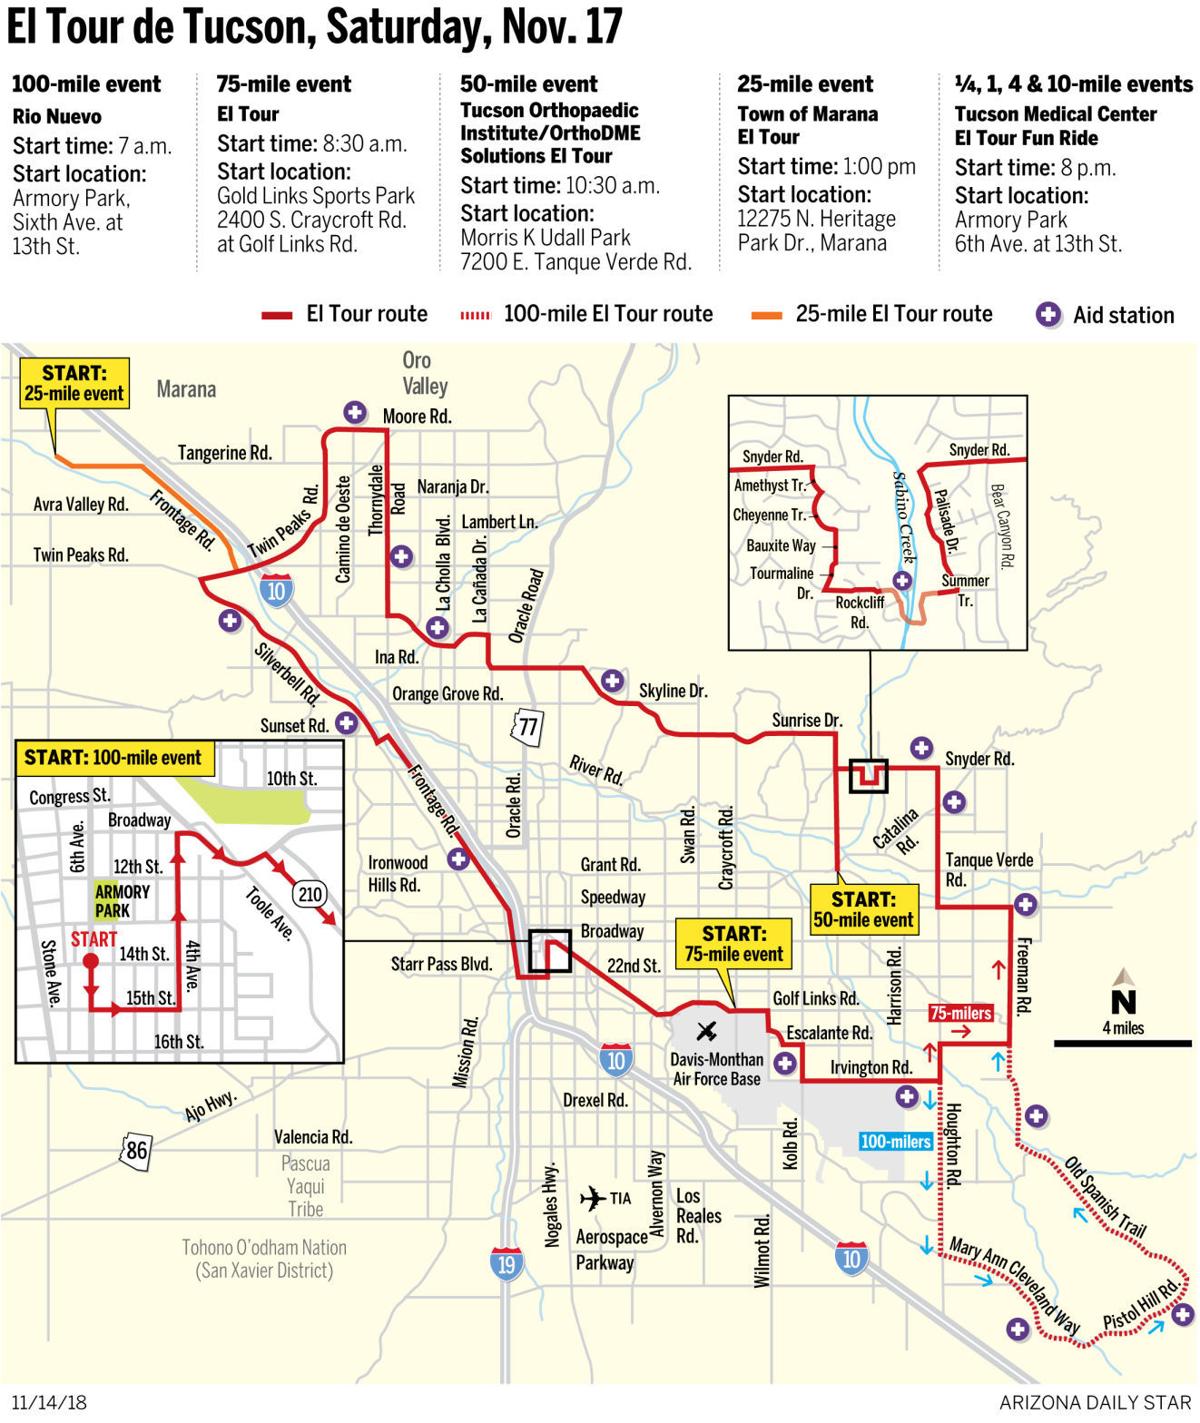 New El Tour de Tucson routes mean different road closures, delays